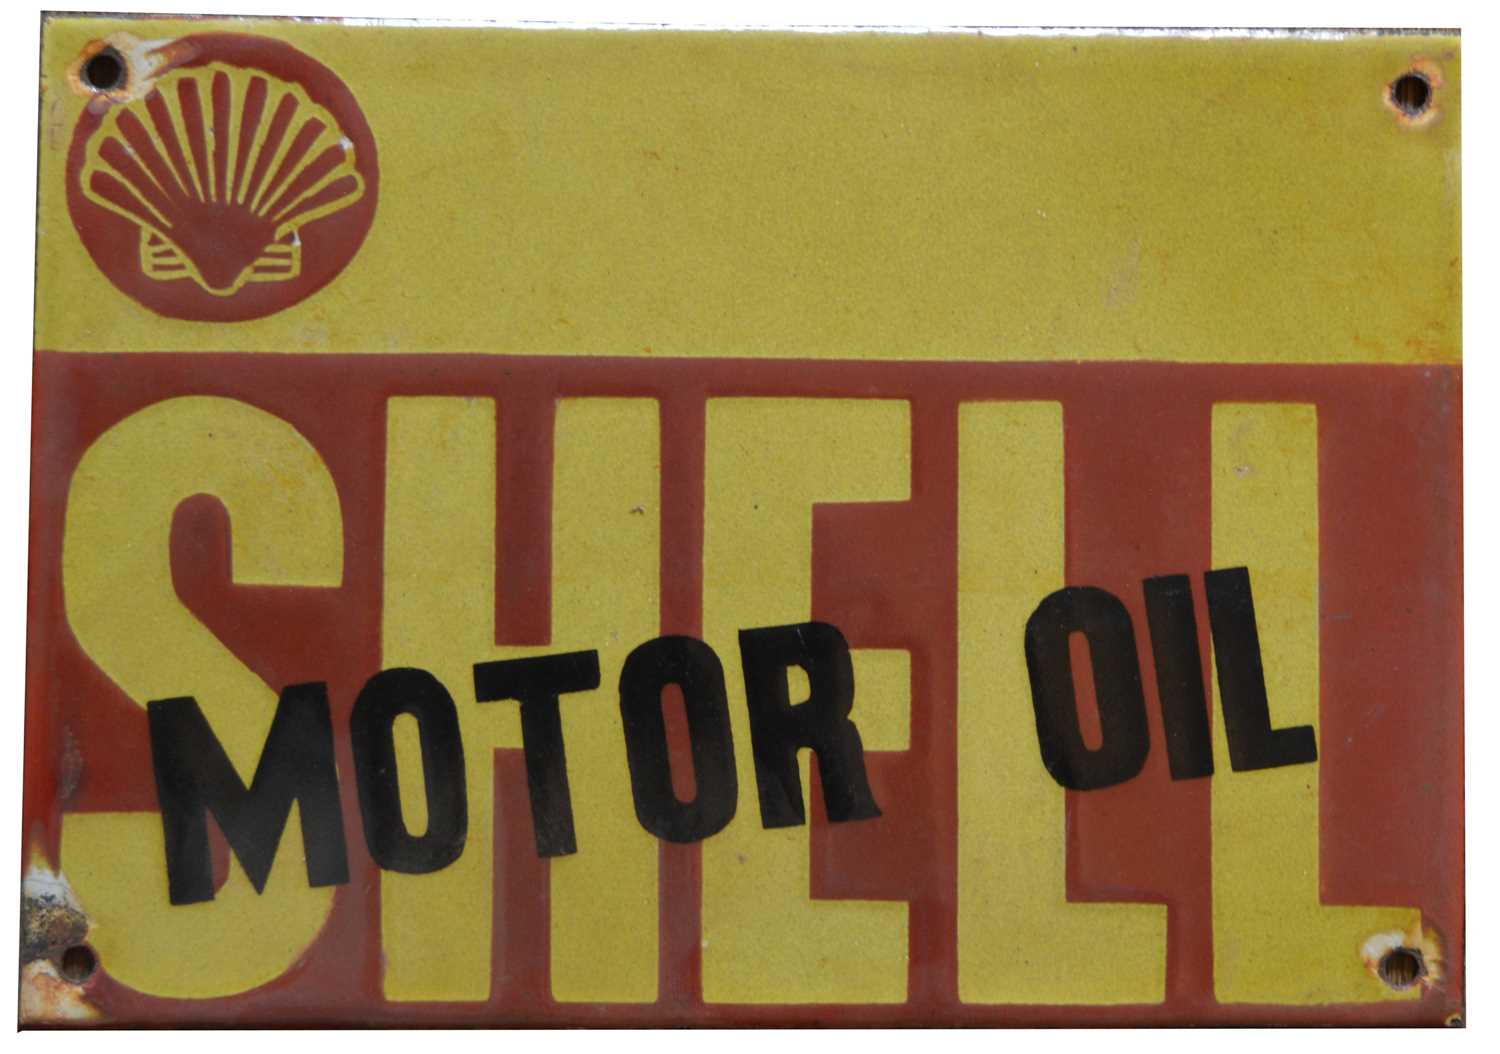 Lot 789 - Shell Motor Oil enamel advertising sign